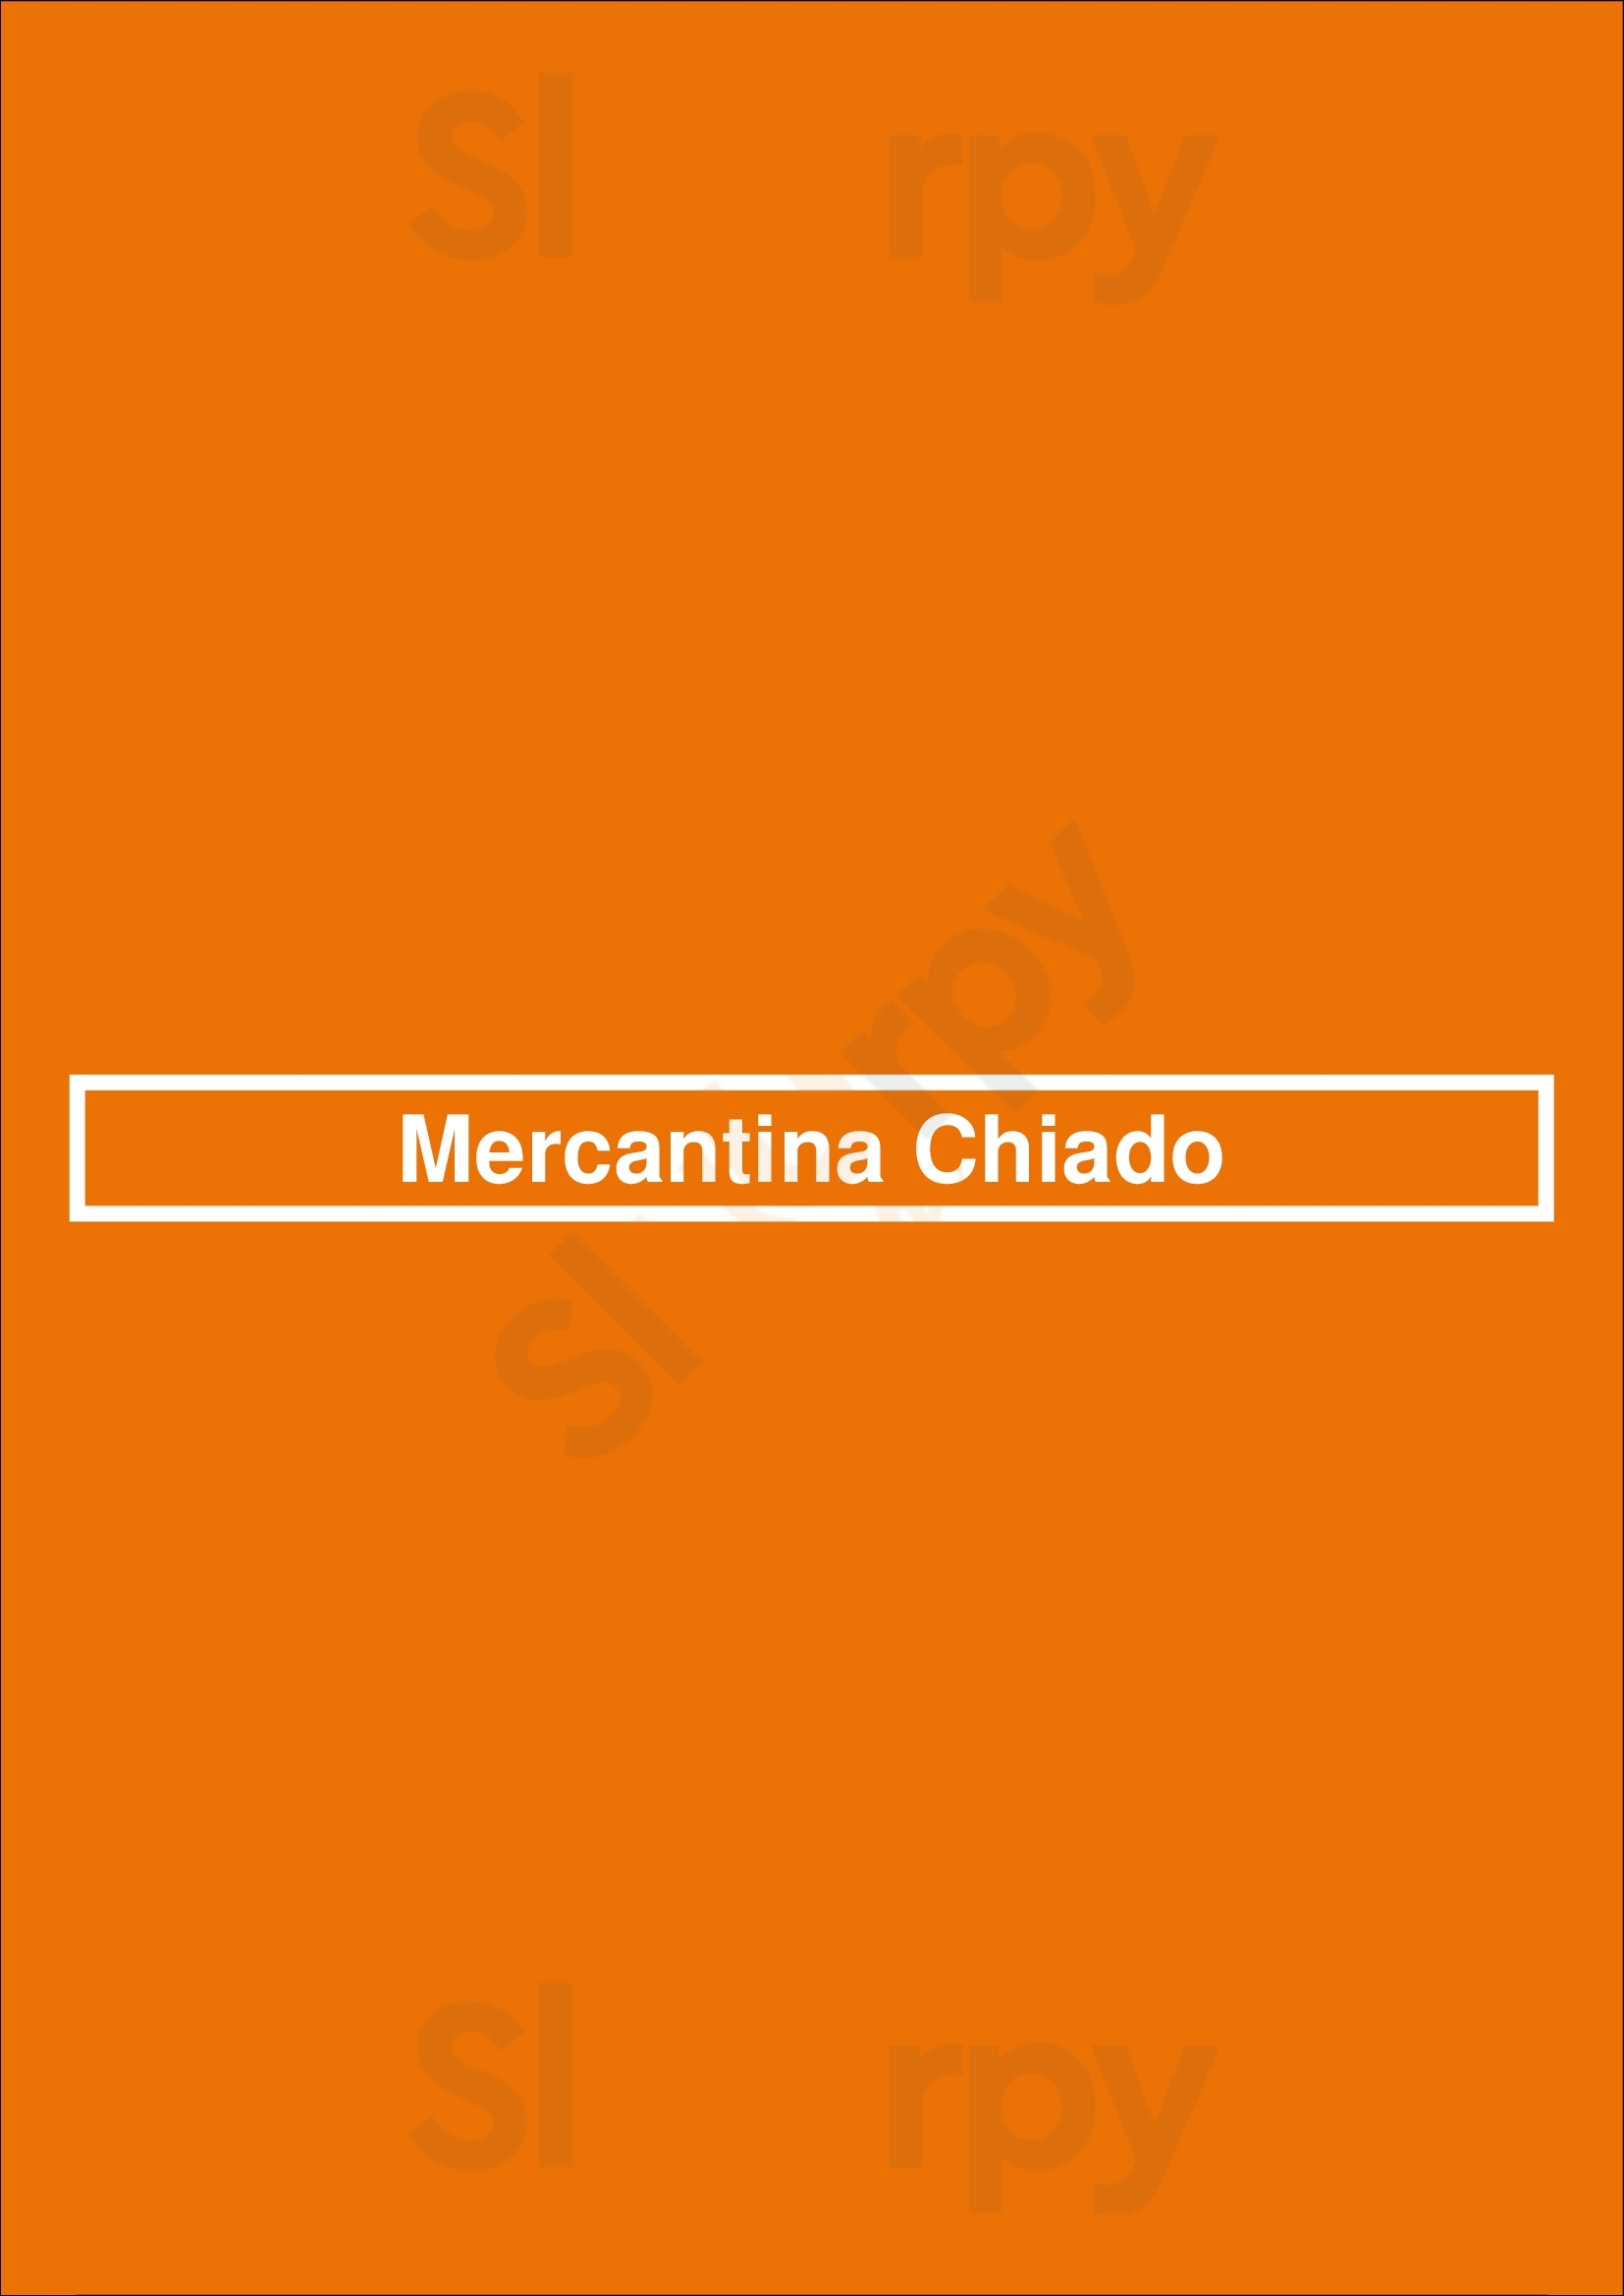 Mercantina Chiado Lisboa Menu - 1